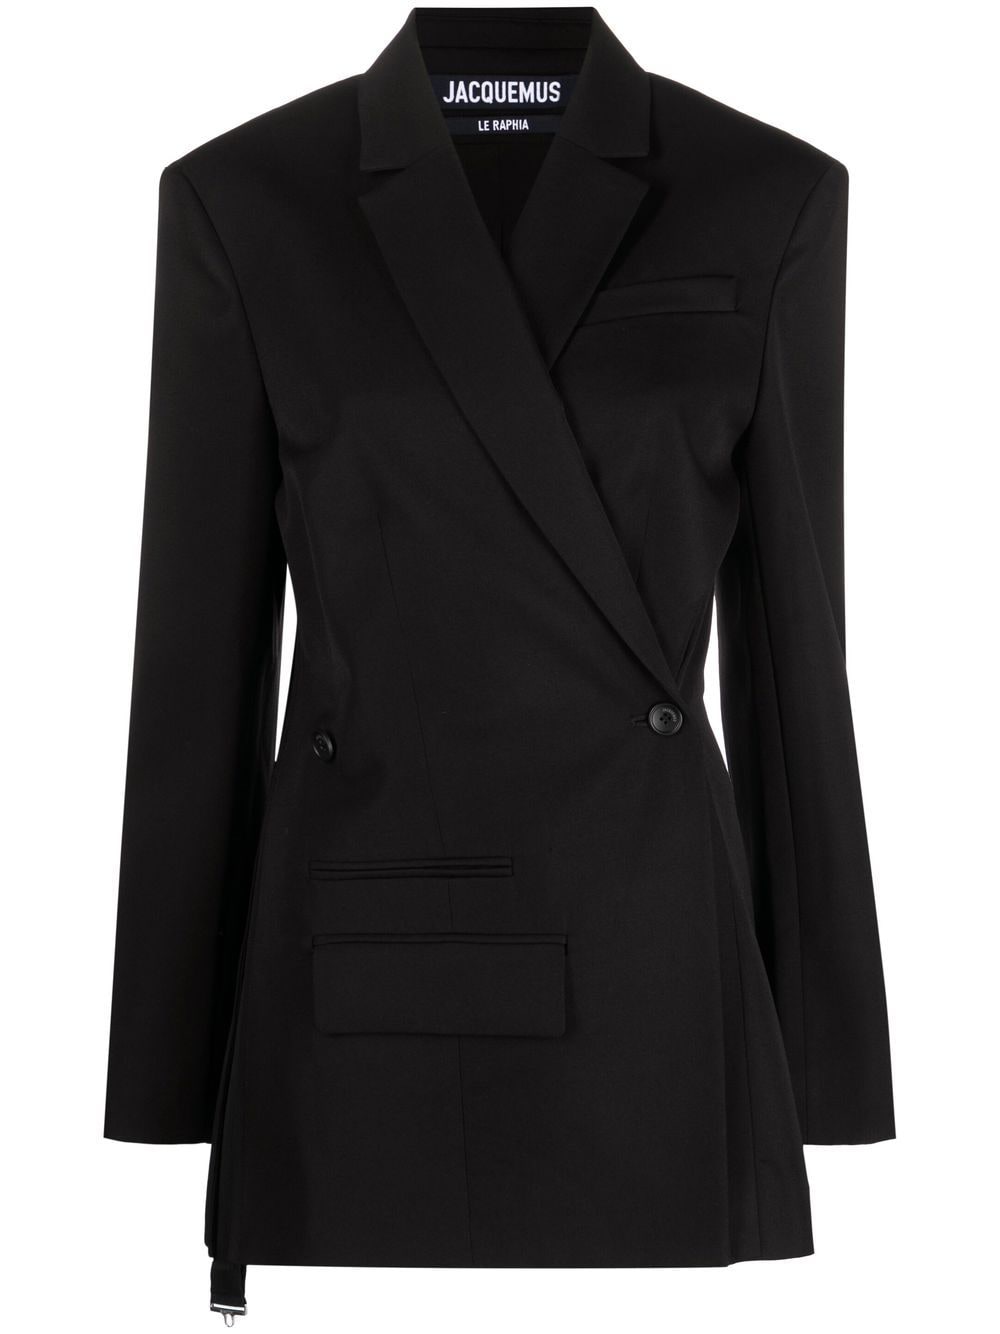 Áo blazer hai hàng cúc màu đen không dây